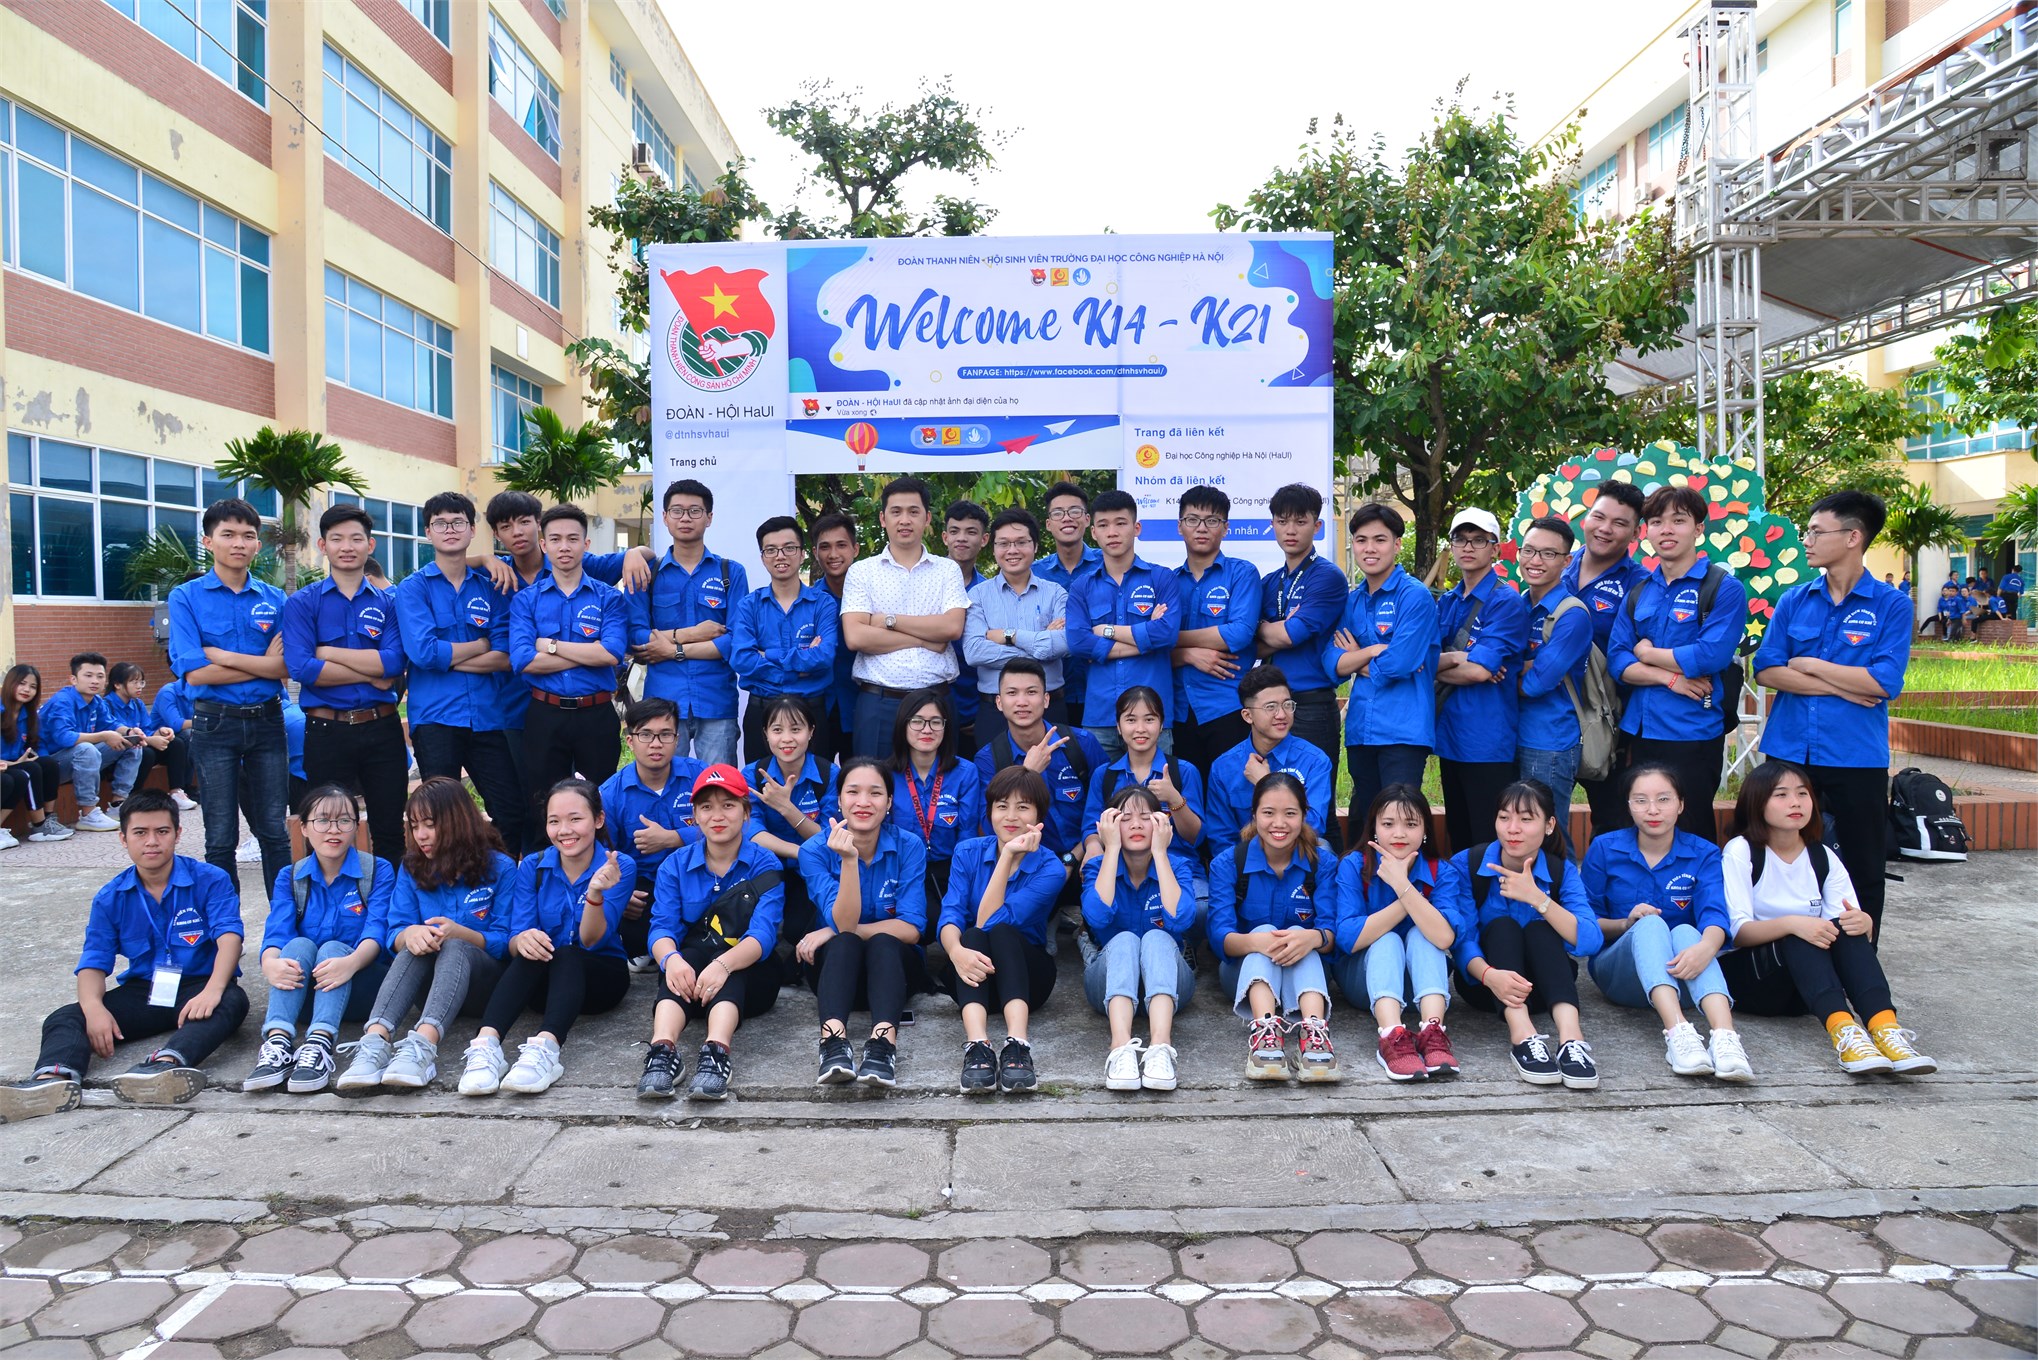 Liên chi đoàn, Liên chi Hội sinh viên Khoa Cơ khí vinh đón nhận bằng khen của Trung ương Đoàn, Hội sinh viên Thành phố Hà Nội